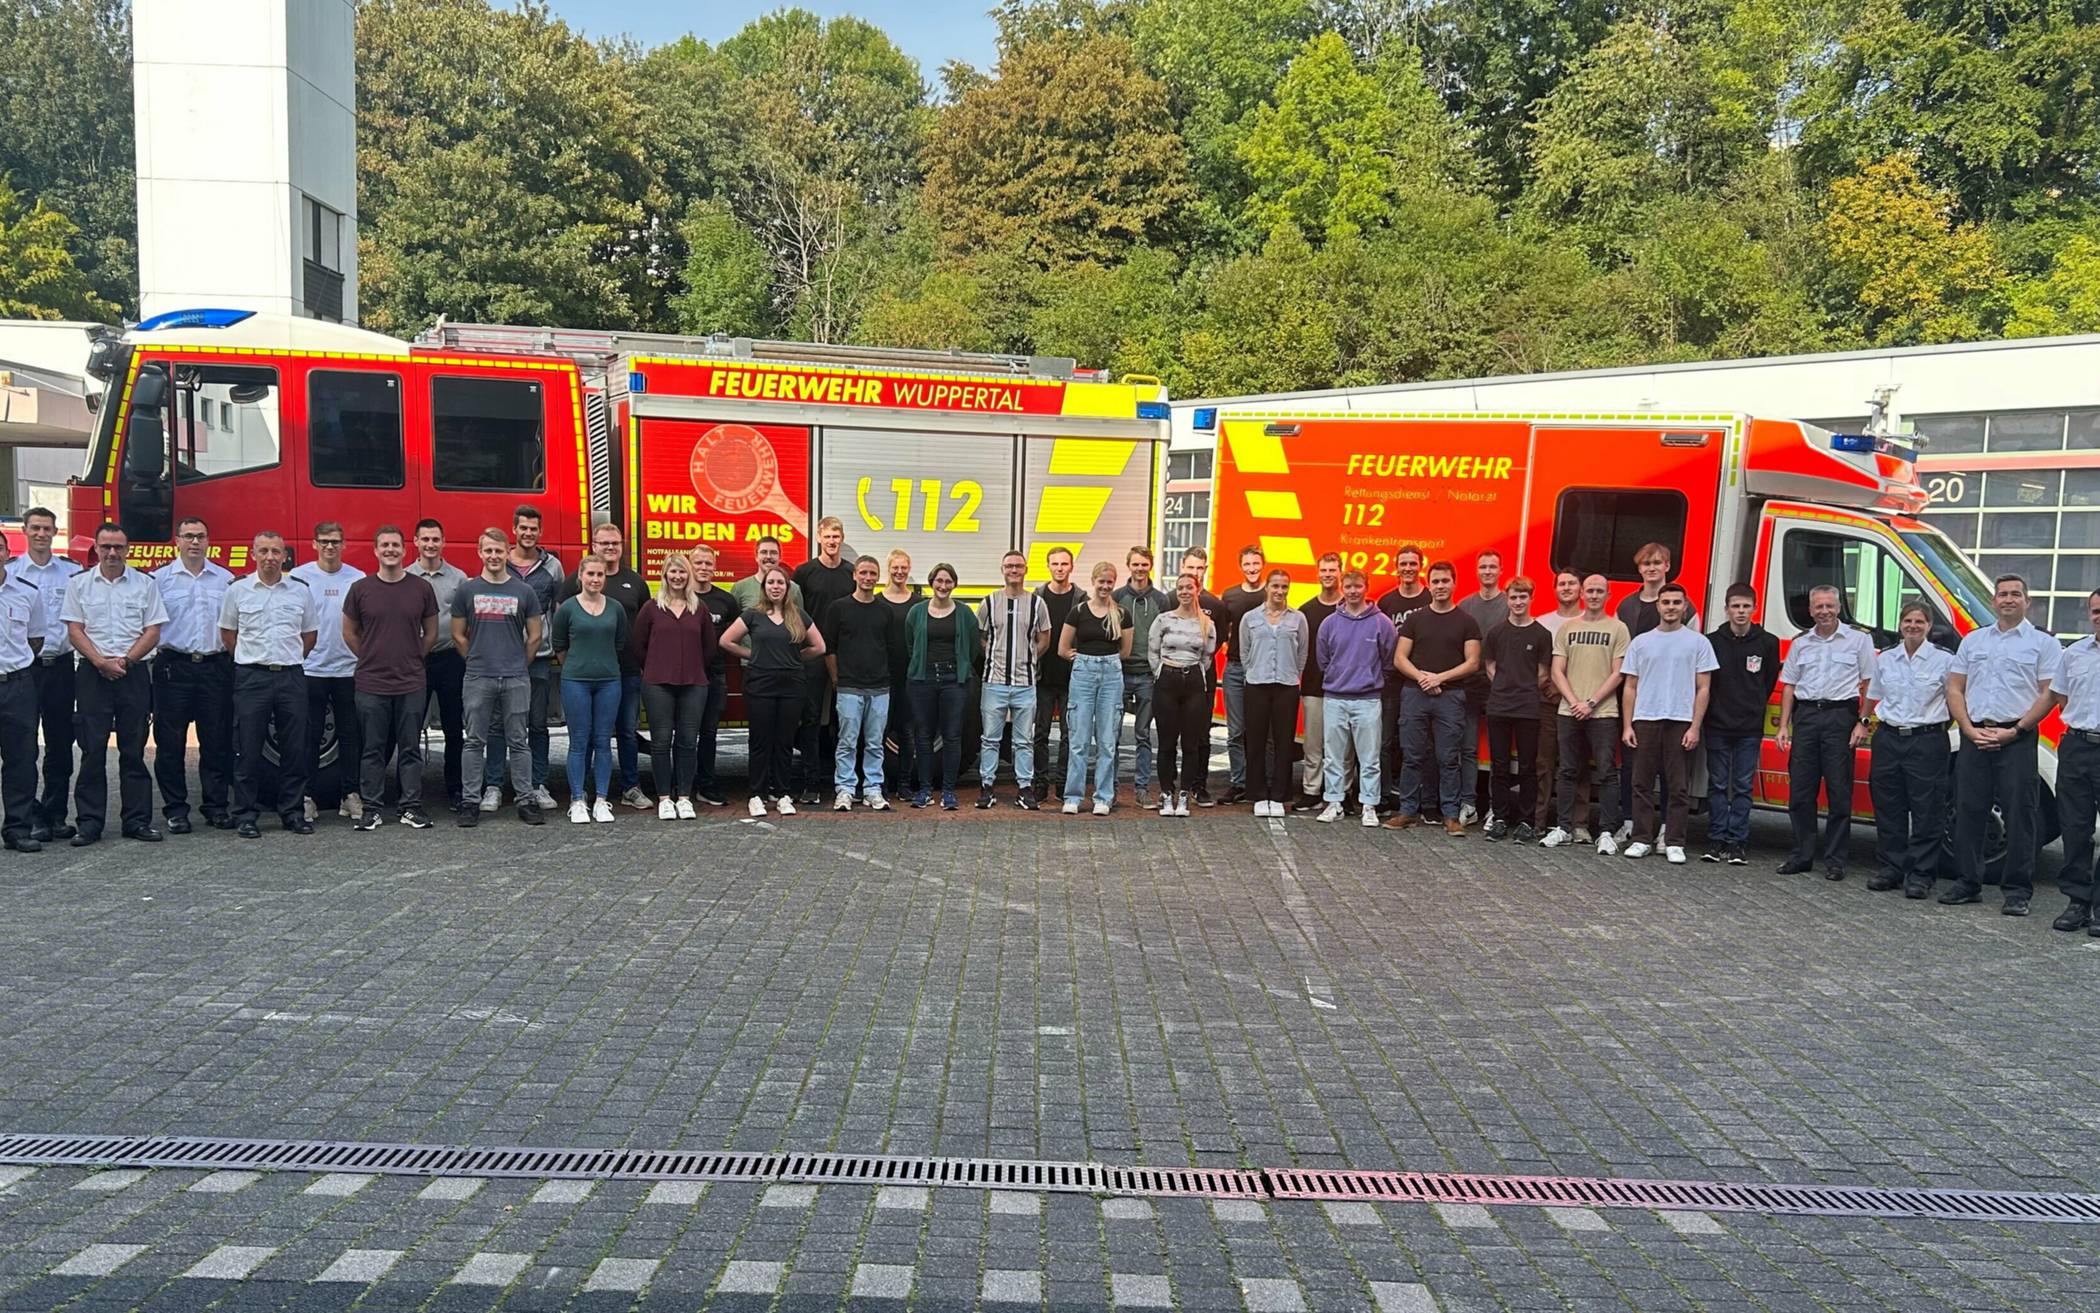  Feuerwehr-Chef Ulrich Zander hieß mit Michael Schwarz und dem Team der Ausbildung die neuen Auszubildenden willkommen.   